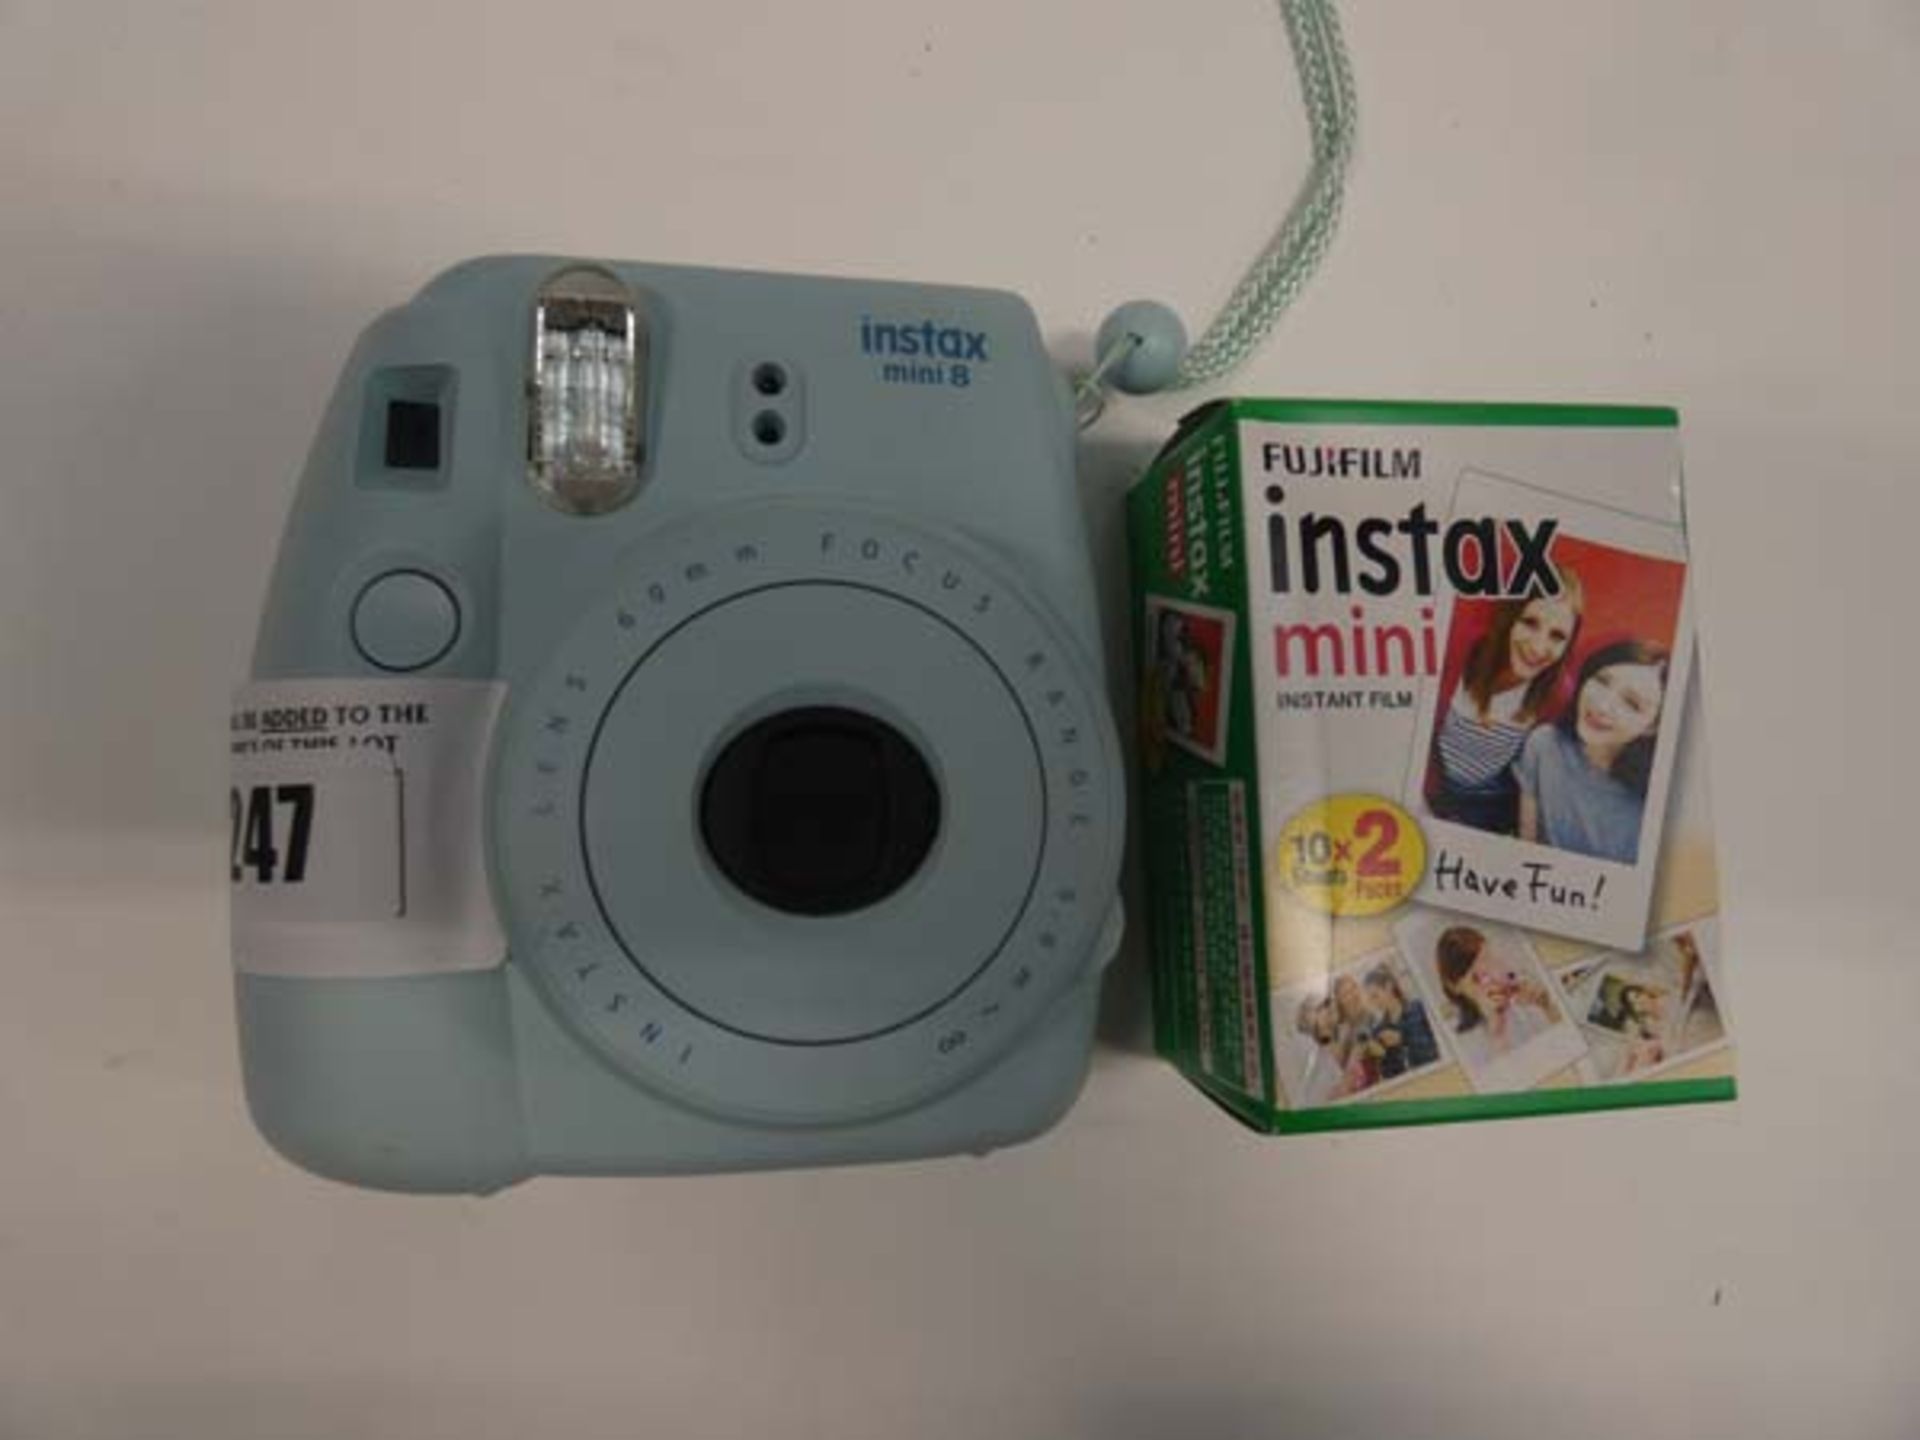 Instax Mini 8 instant camera with Instax Mini film